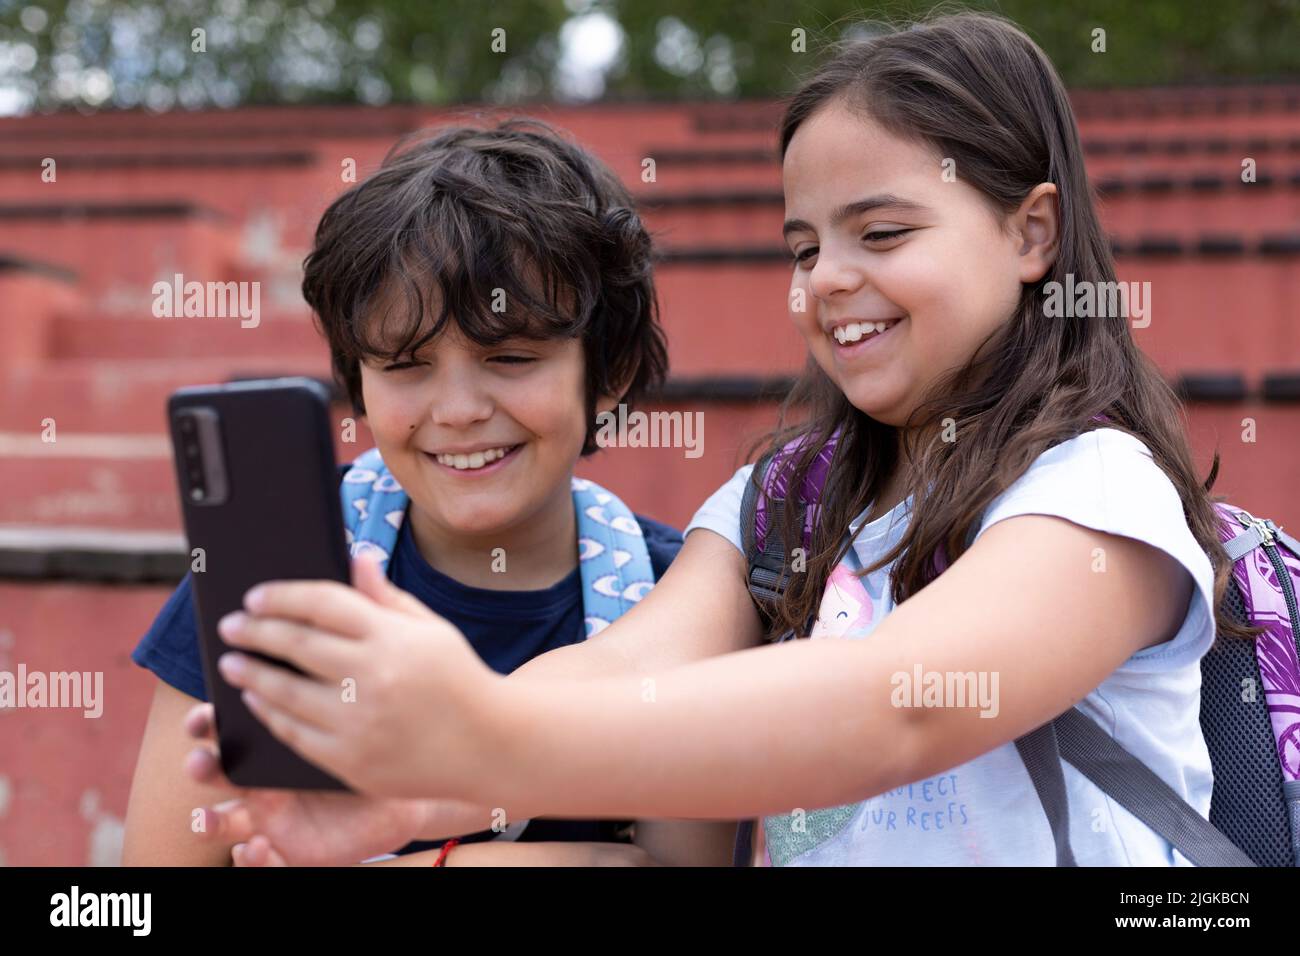 Gros plan des jeunes filles et garçons du caucase souriants qui prennent une photo avec un téléphone portable à l'extérieur. Concept de l'utilisation de la technologie Banque D'Images